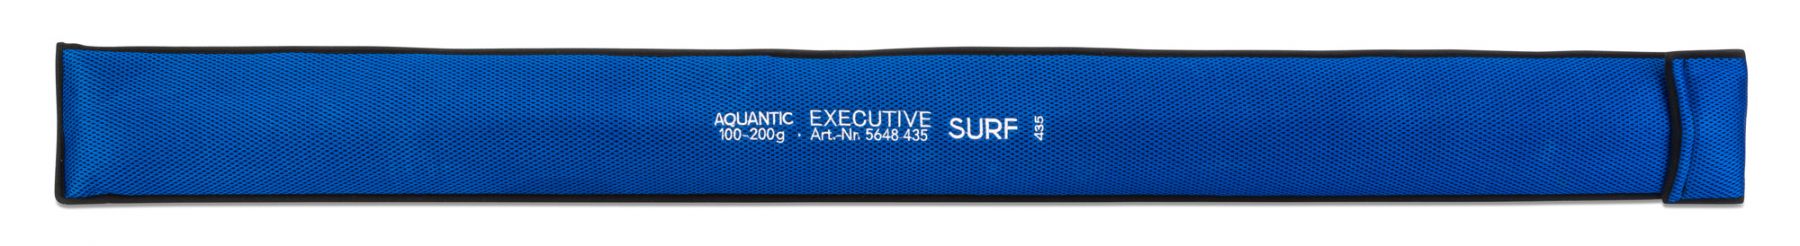 Aquantic Executive Surf Caña para Playa 4.35m (100-200g) (3-Partes)